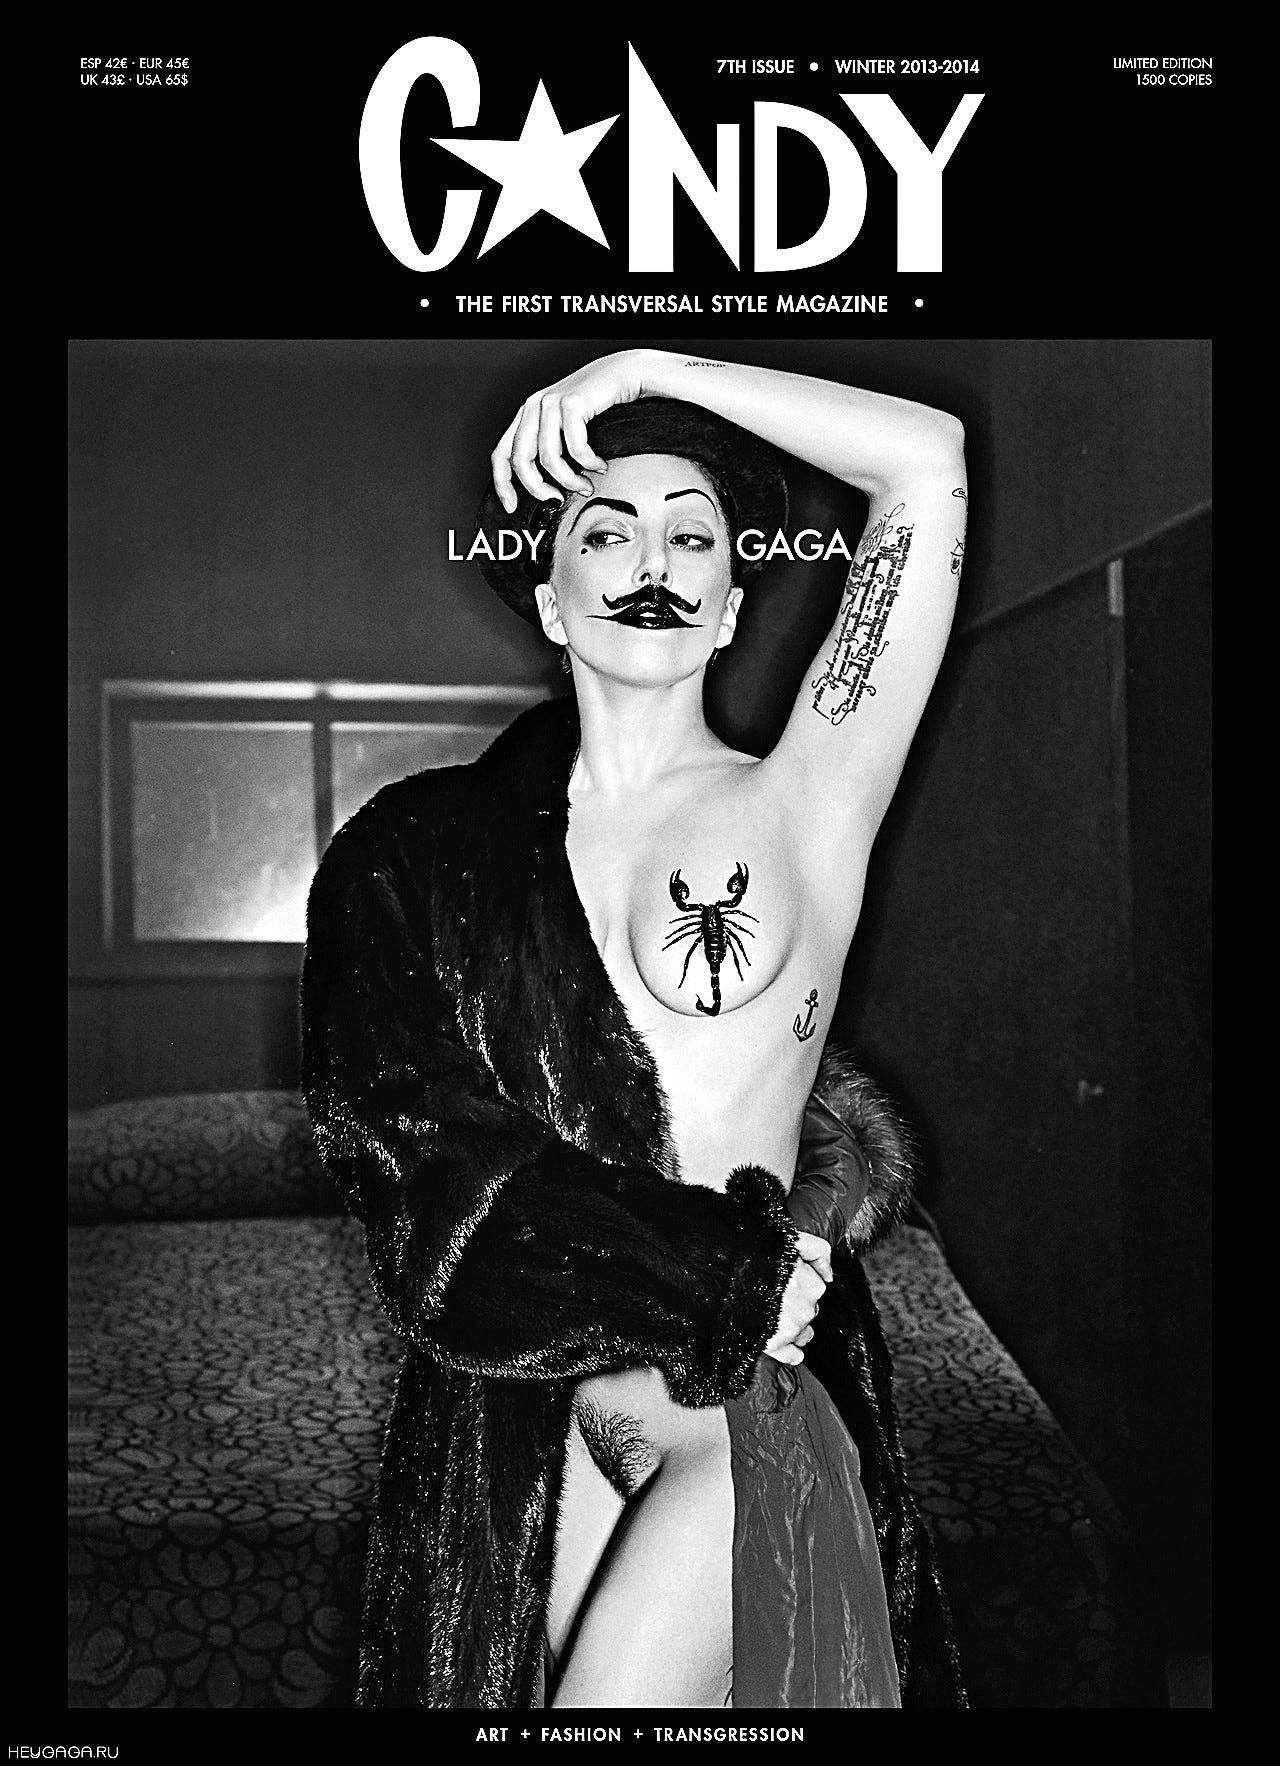 Lady Gaga Nude shots tumblr